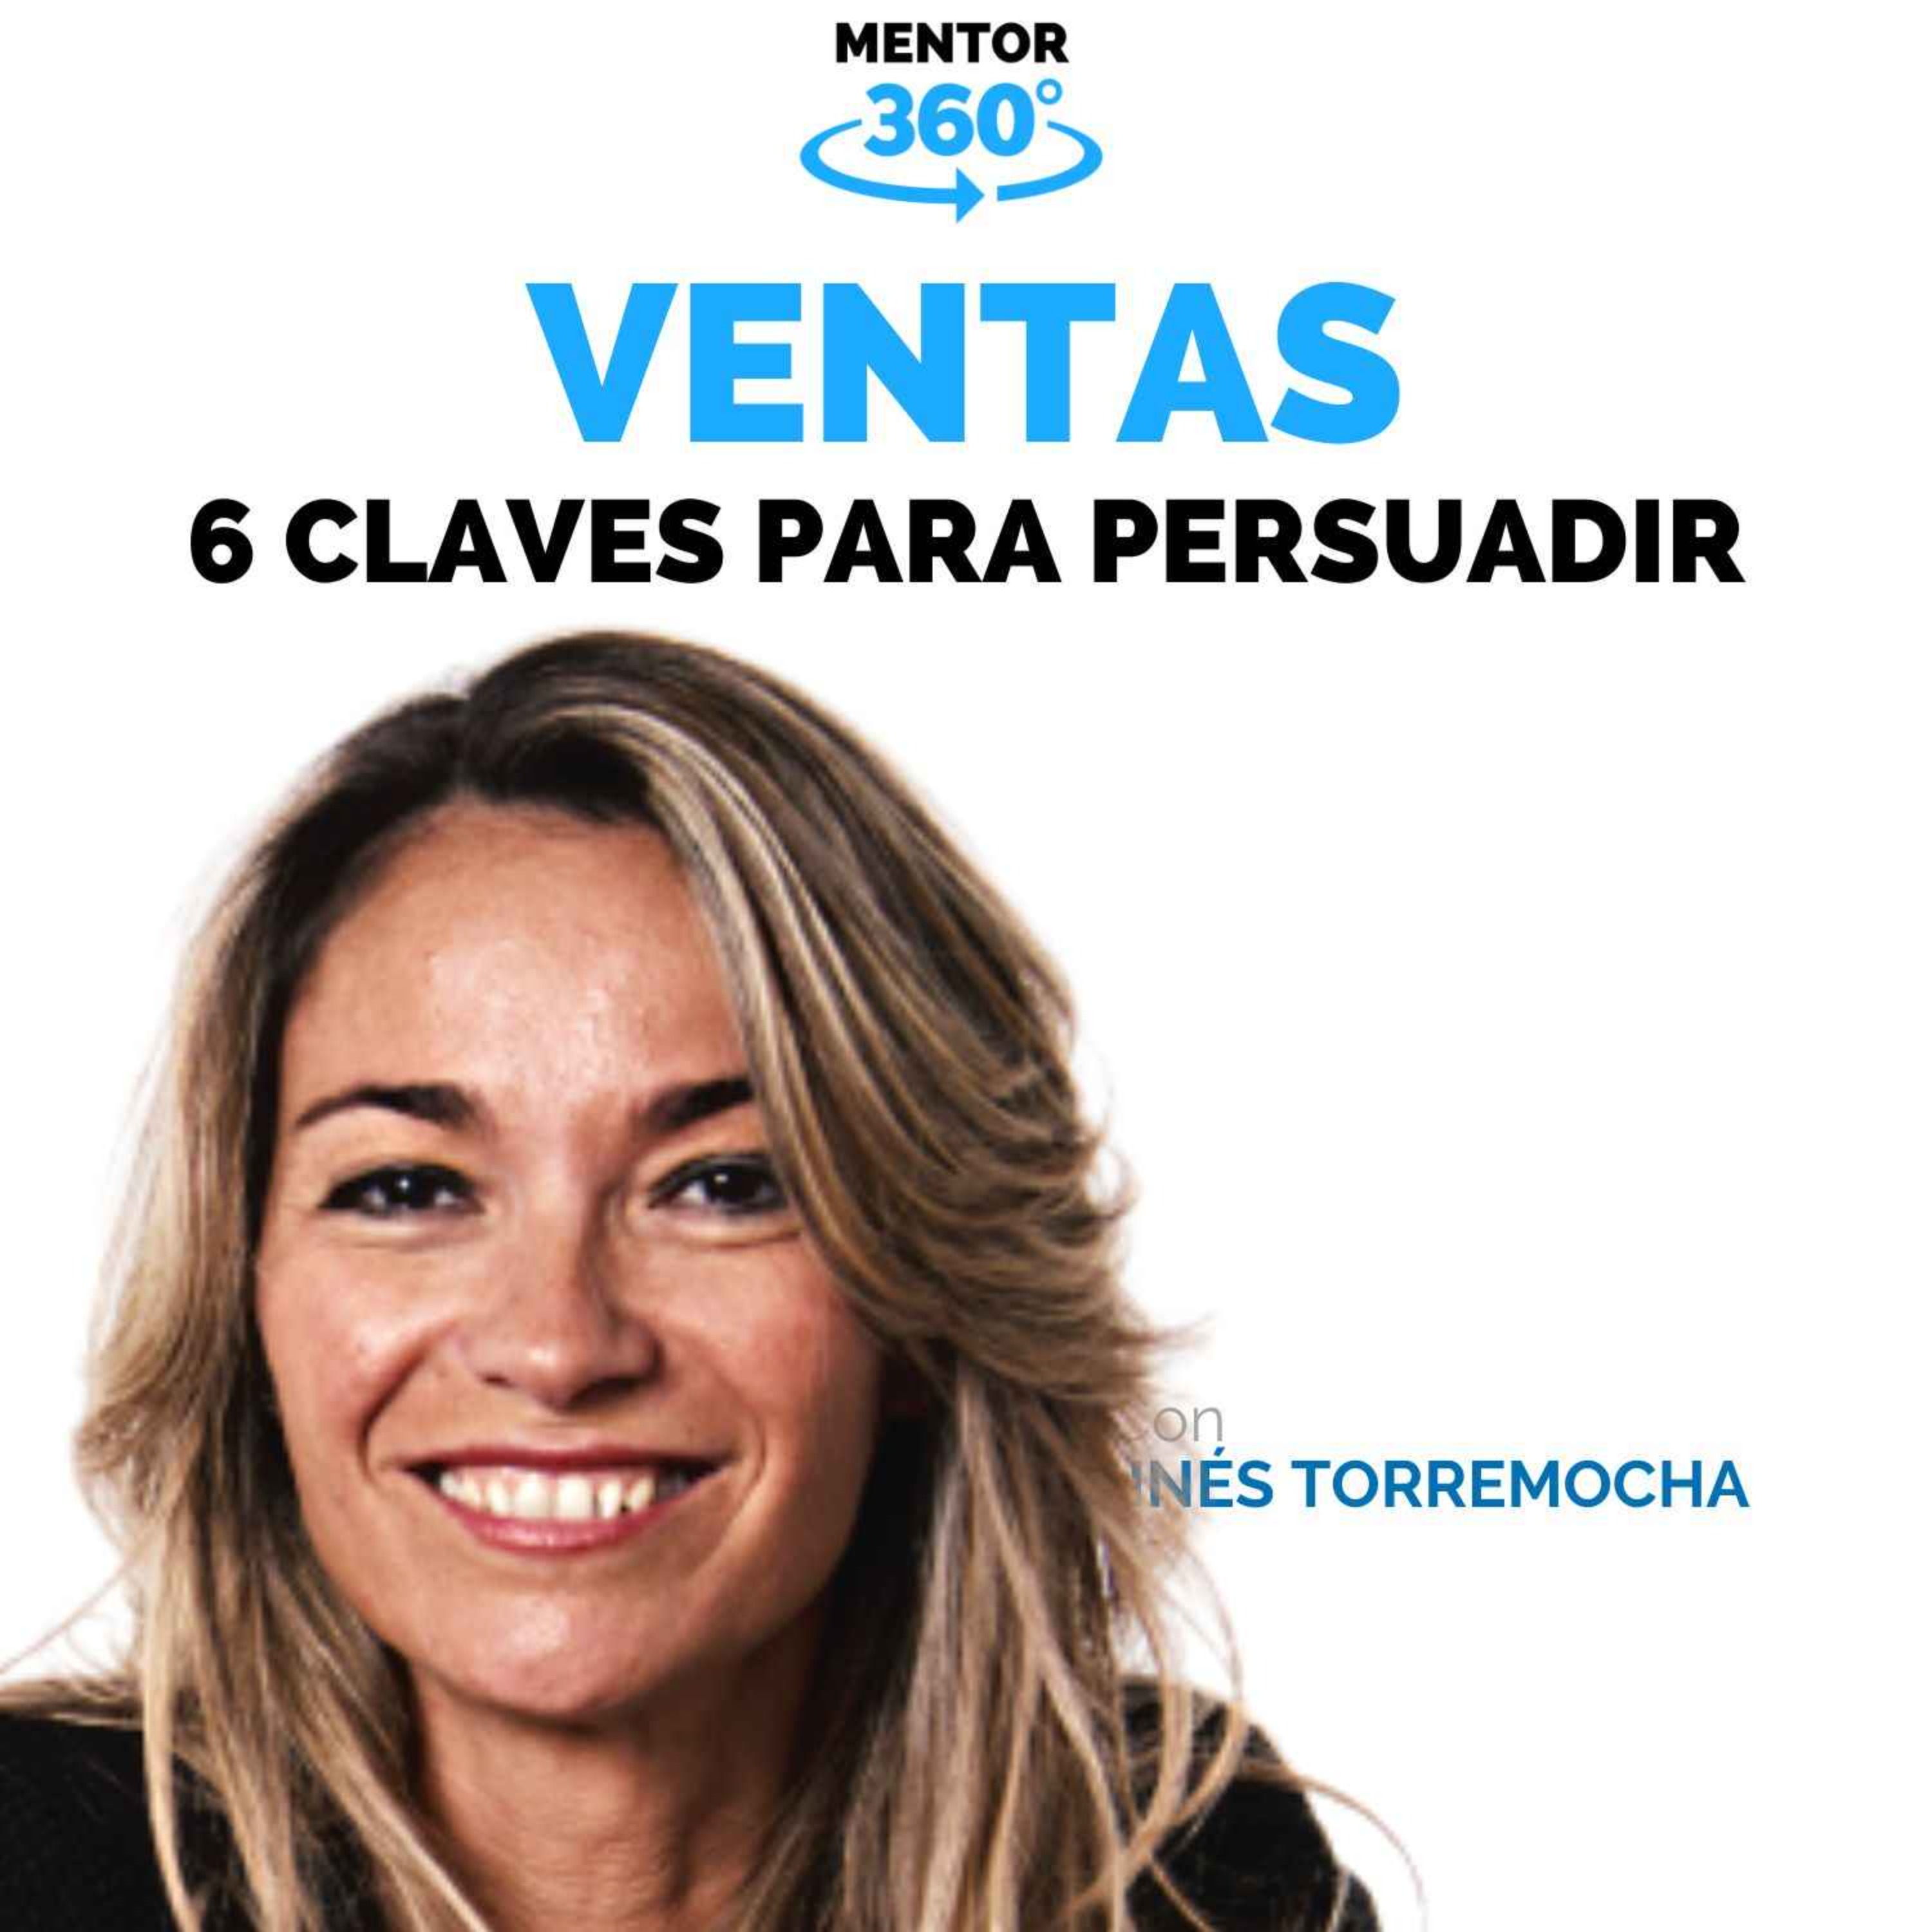 6 Claves para Persuadir - Inés Torremocha - Ventas - MENTOR360